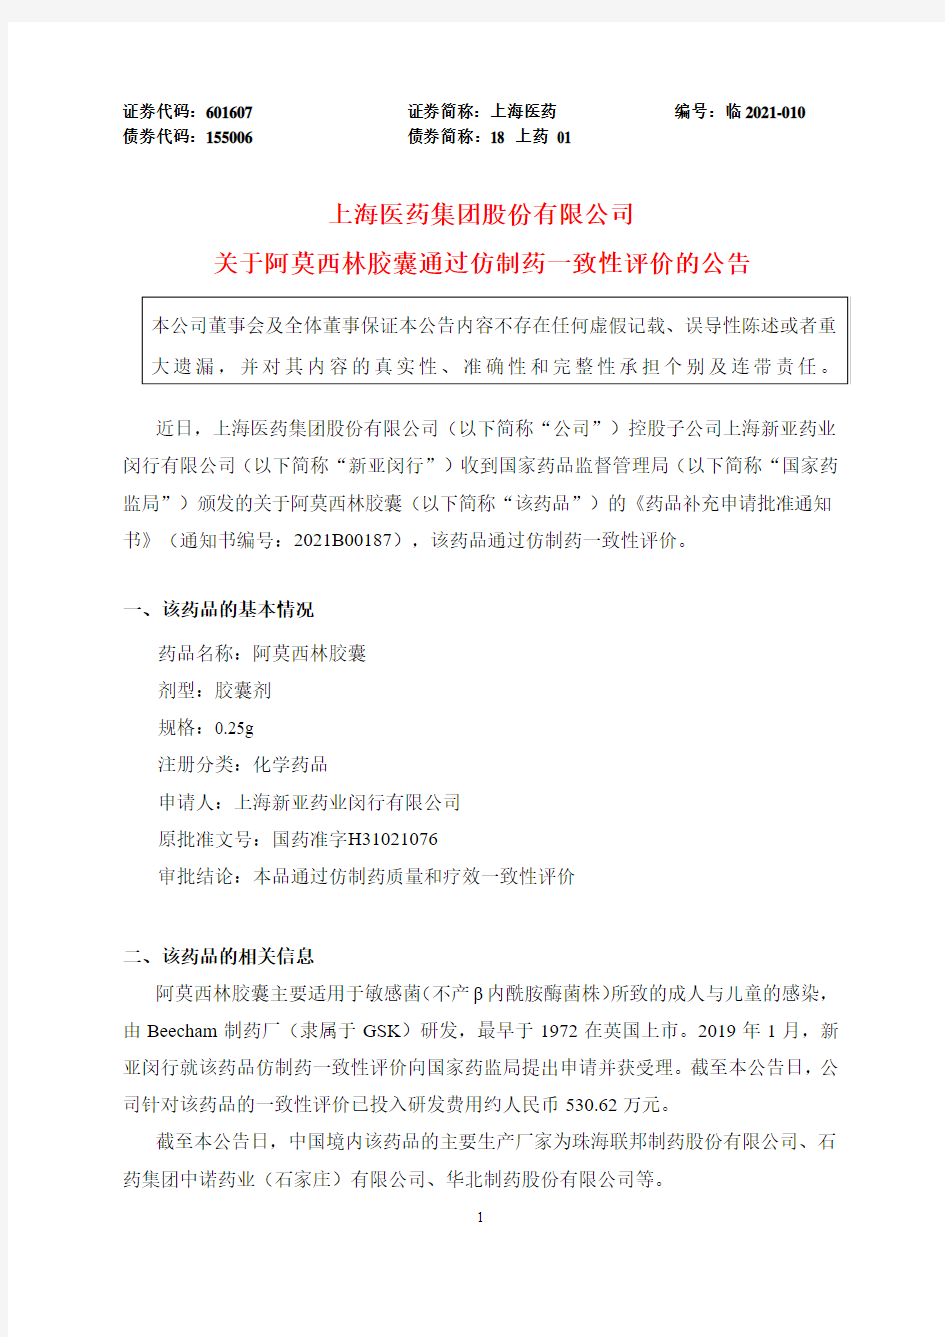 601607上海医药集团股份有限公司关于阿莫西林胶囊通过仿制药一致性评2021-02-10